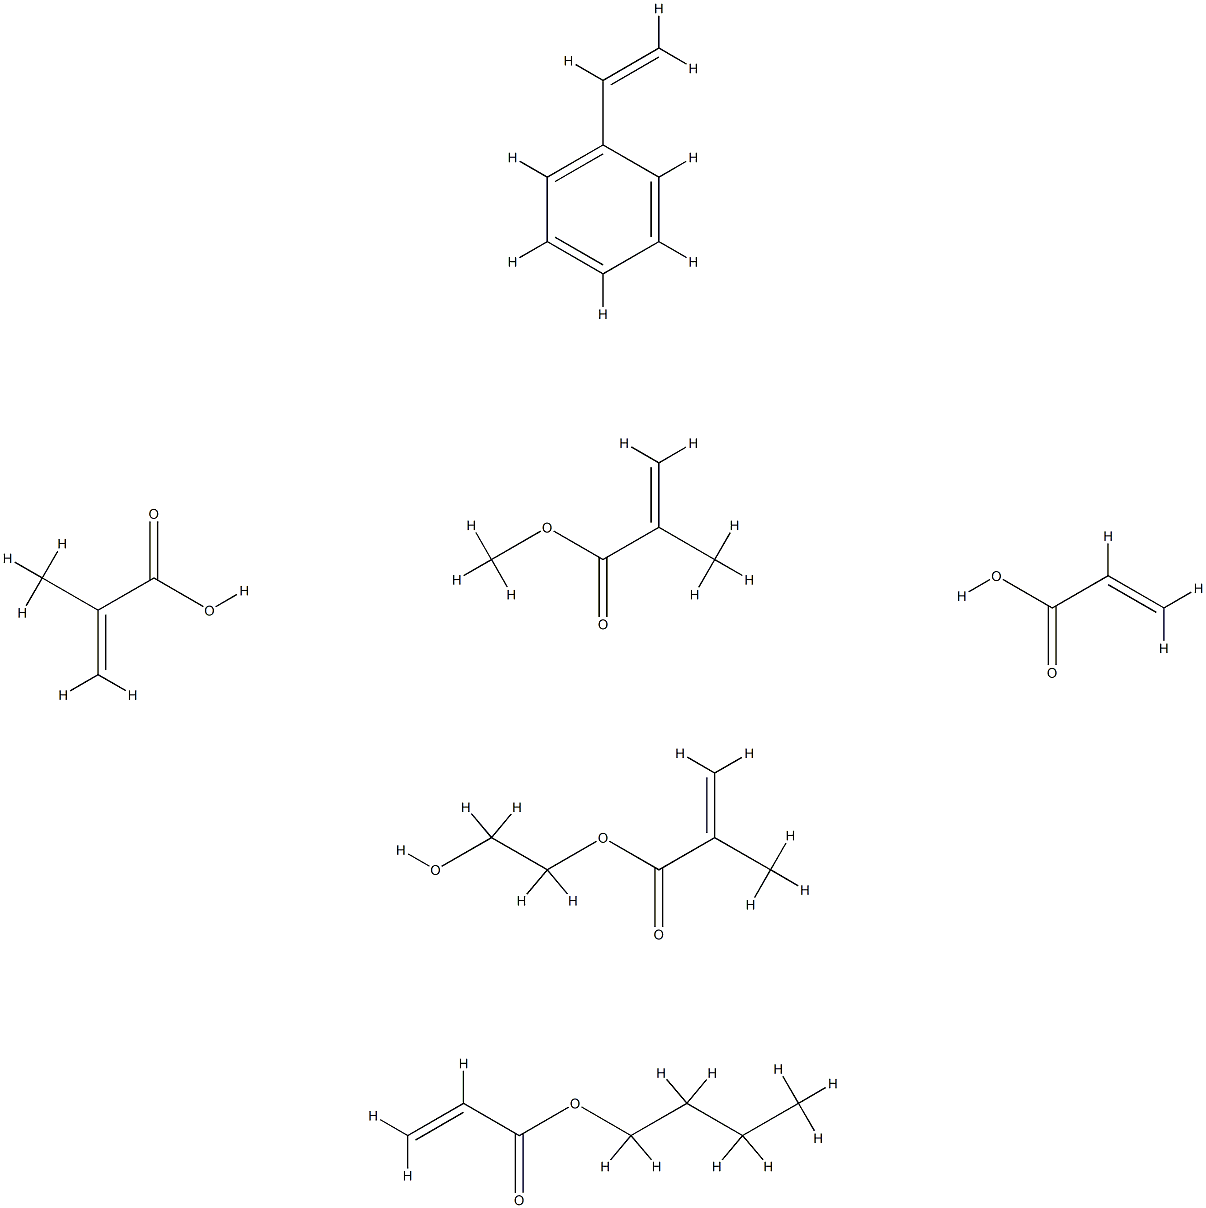 2-Propenoic acid, 2-methyl-, polymer with butyl 2-propenoate, ethenylbenzene, 2-hydroxyethyl 2-methyl-2-propenoate, methyl 2-methyl-2-propenoate and 2-propenoic acid Structure